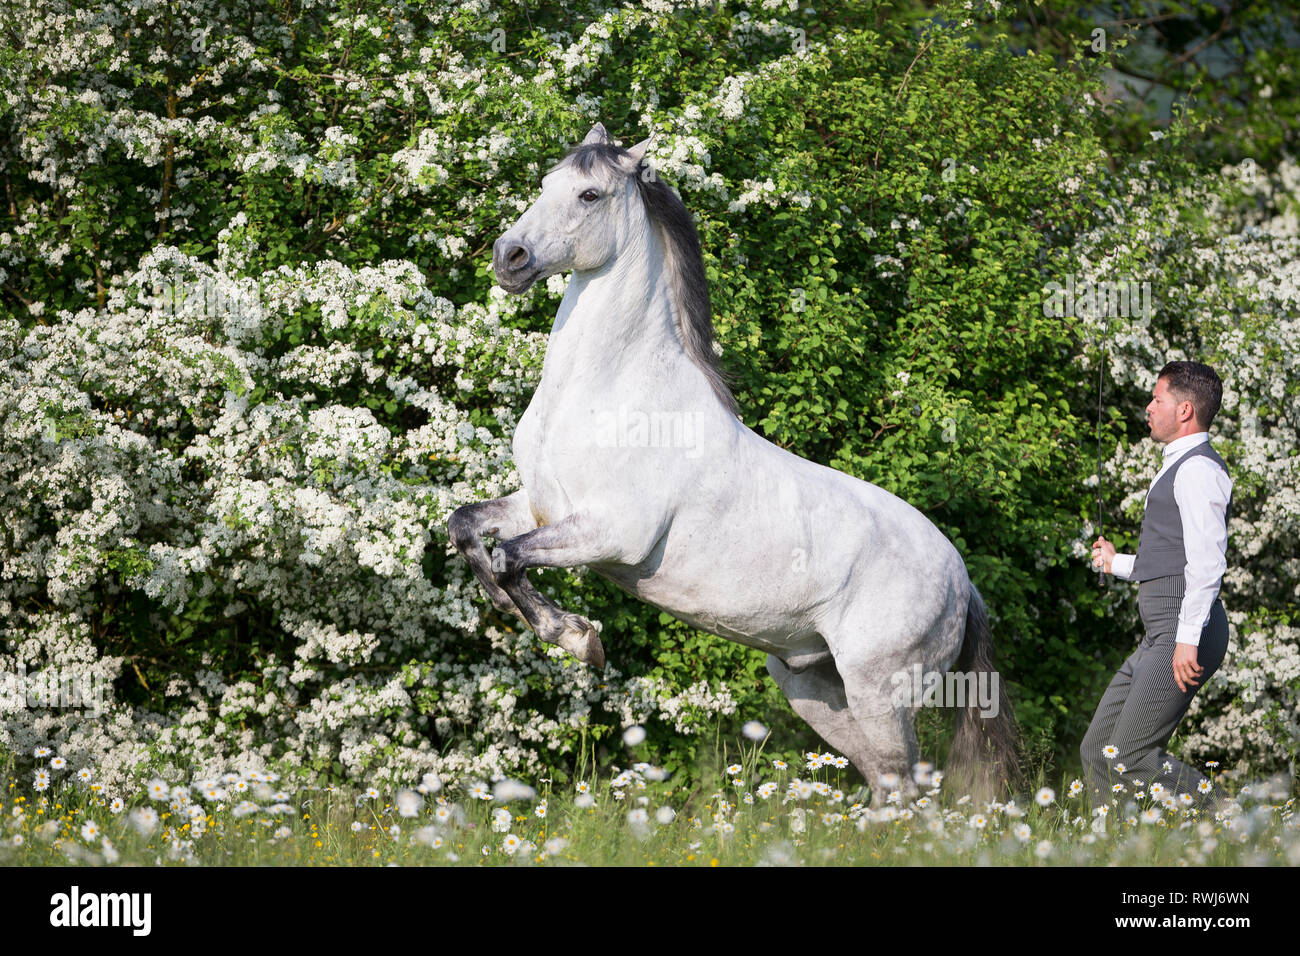 Reine Spanische Pferd, Andalusische. Blind Wallach Aufzucht auf einer blühenden Wiese, neben seinem Reiter und Besitzer Sandro Huerzeler. Schweiz Stockfoto